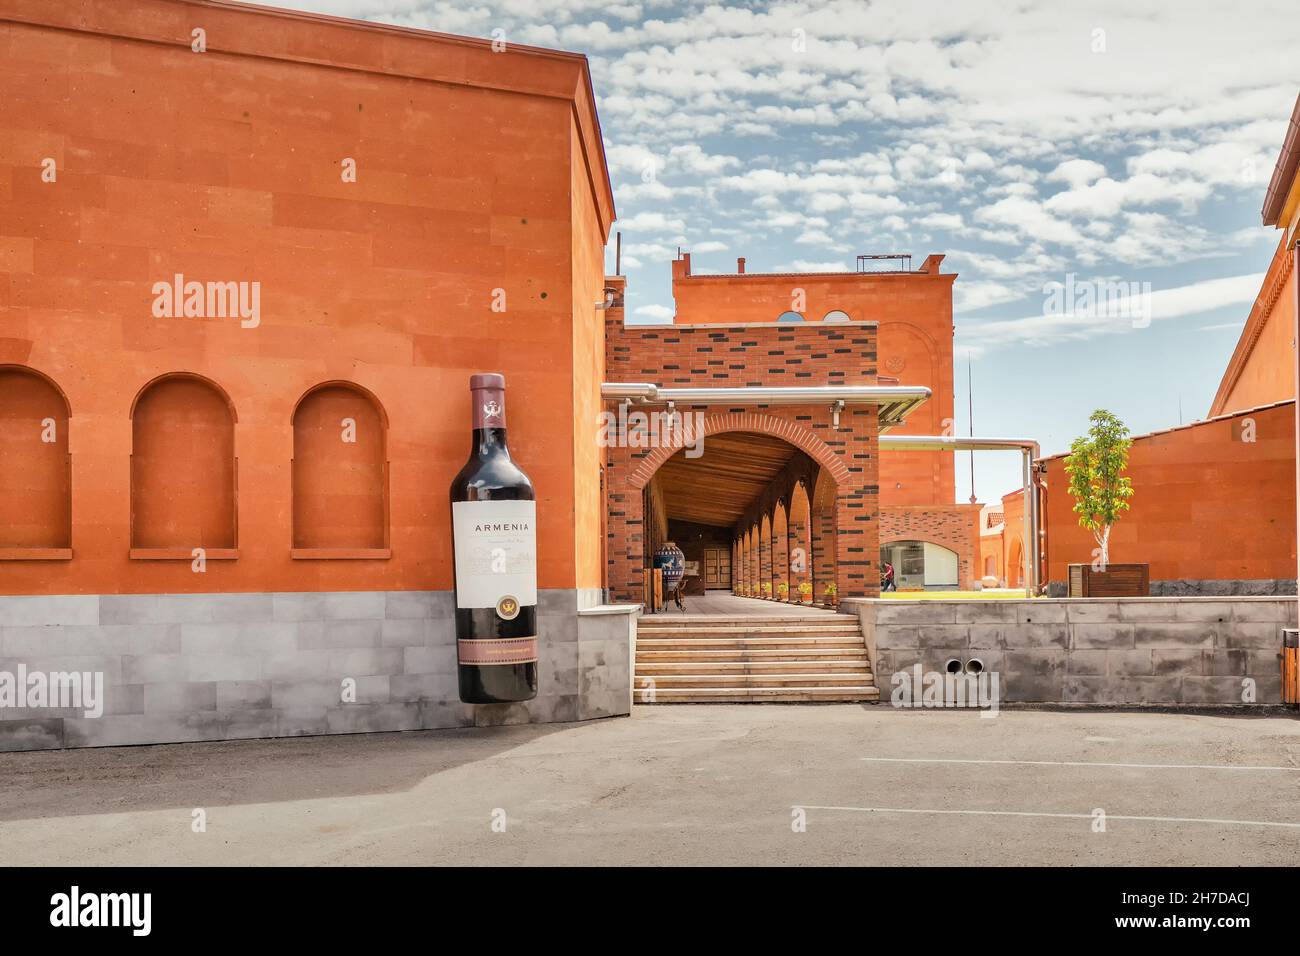 18 maggio 2021, Armenia Wine Factory, Armenia: Costruzione della famosa fabbrica di vino e cognac: Armenia Wine. Producono alcah di alta qualità Foto Stock